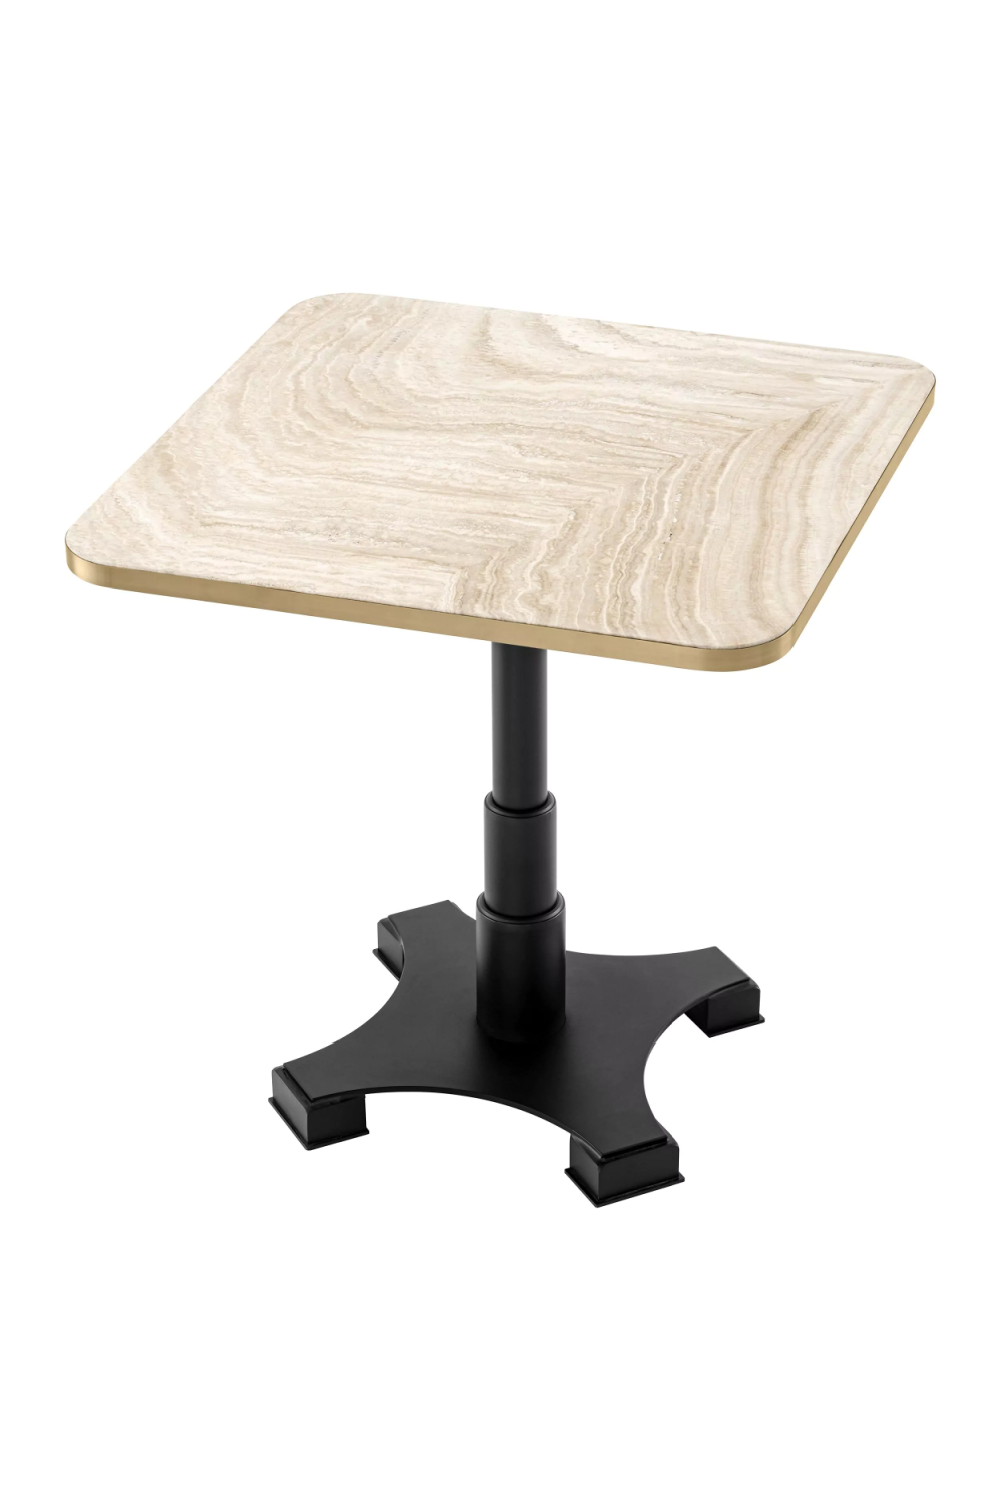 Square Pedestal Dining Table | Eichholtz Avoria | Oroa.com